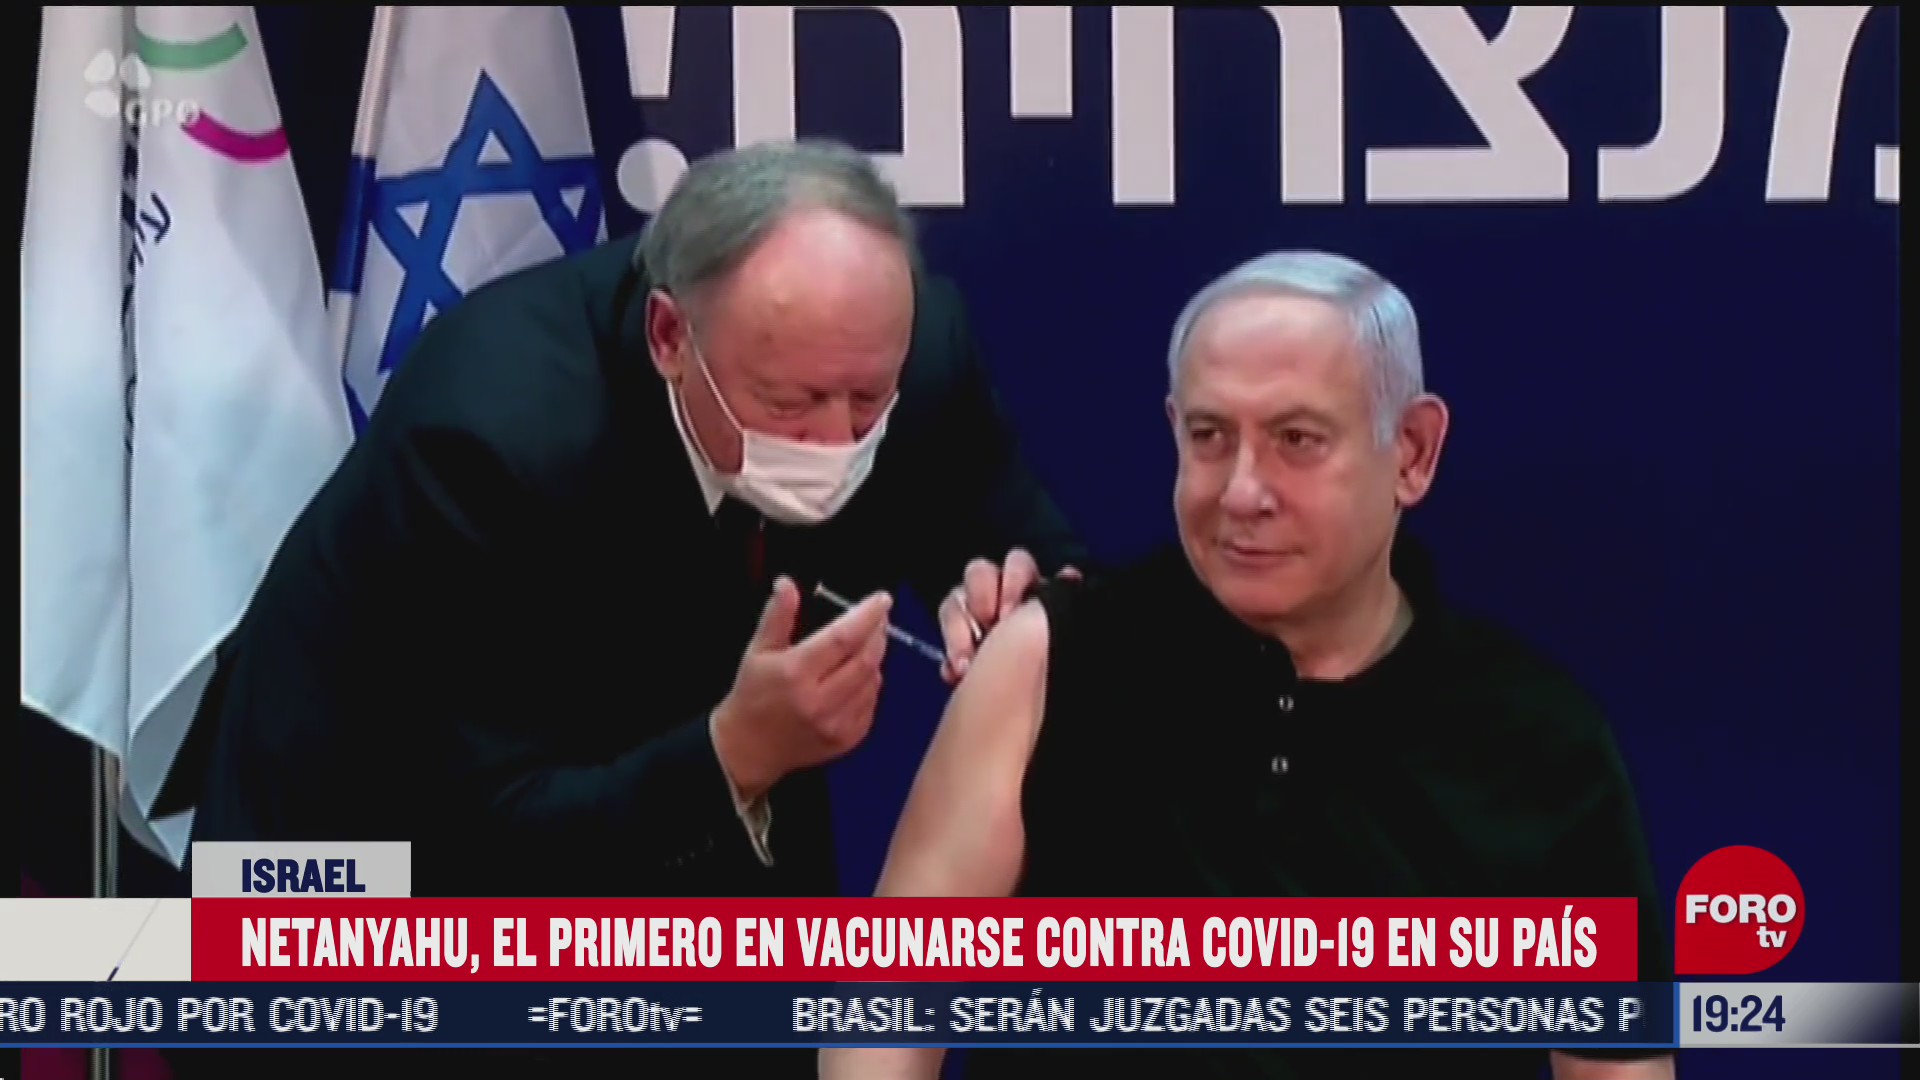 benjamin netanyahu el primer hombre en vacunarse contra covid 19 en israel